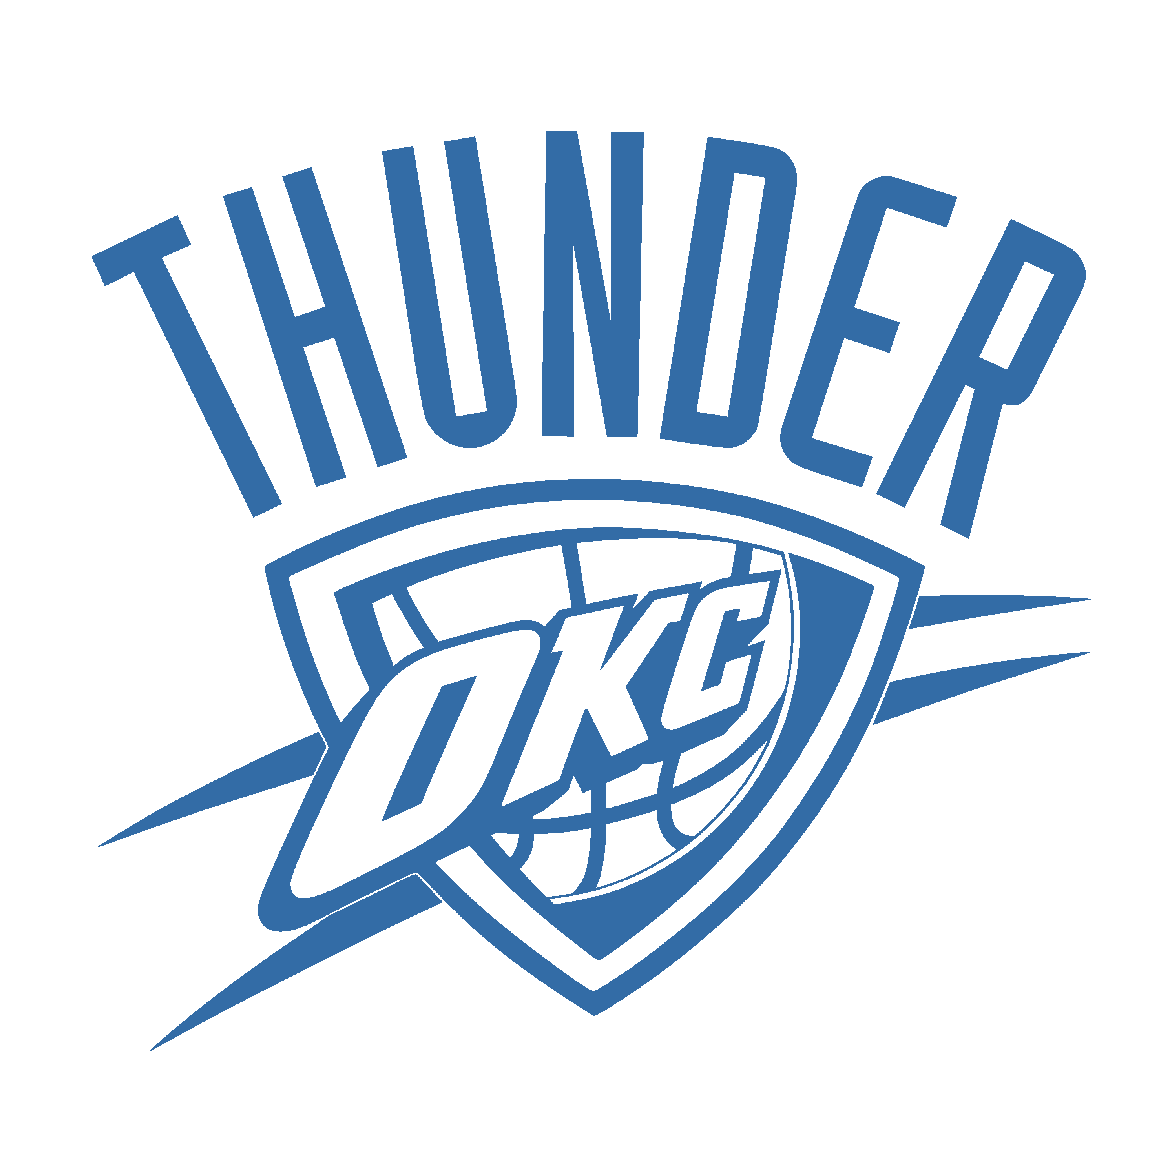 Oklahoma City Thunder Blue Logo PNG Image in Transparent pngteam.com